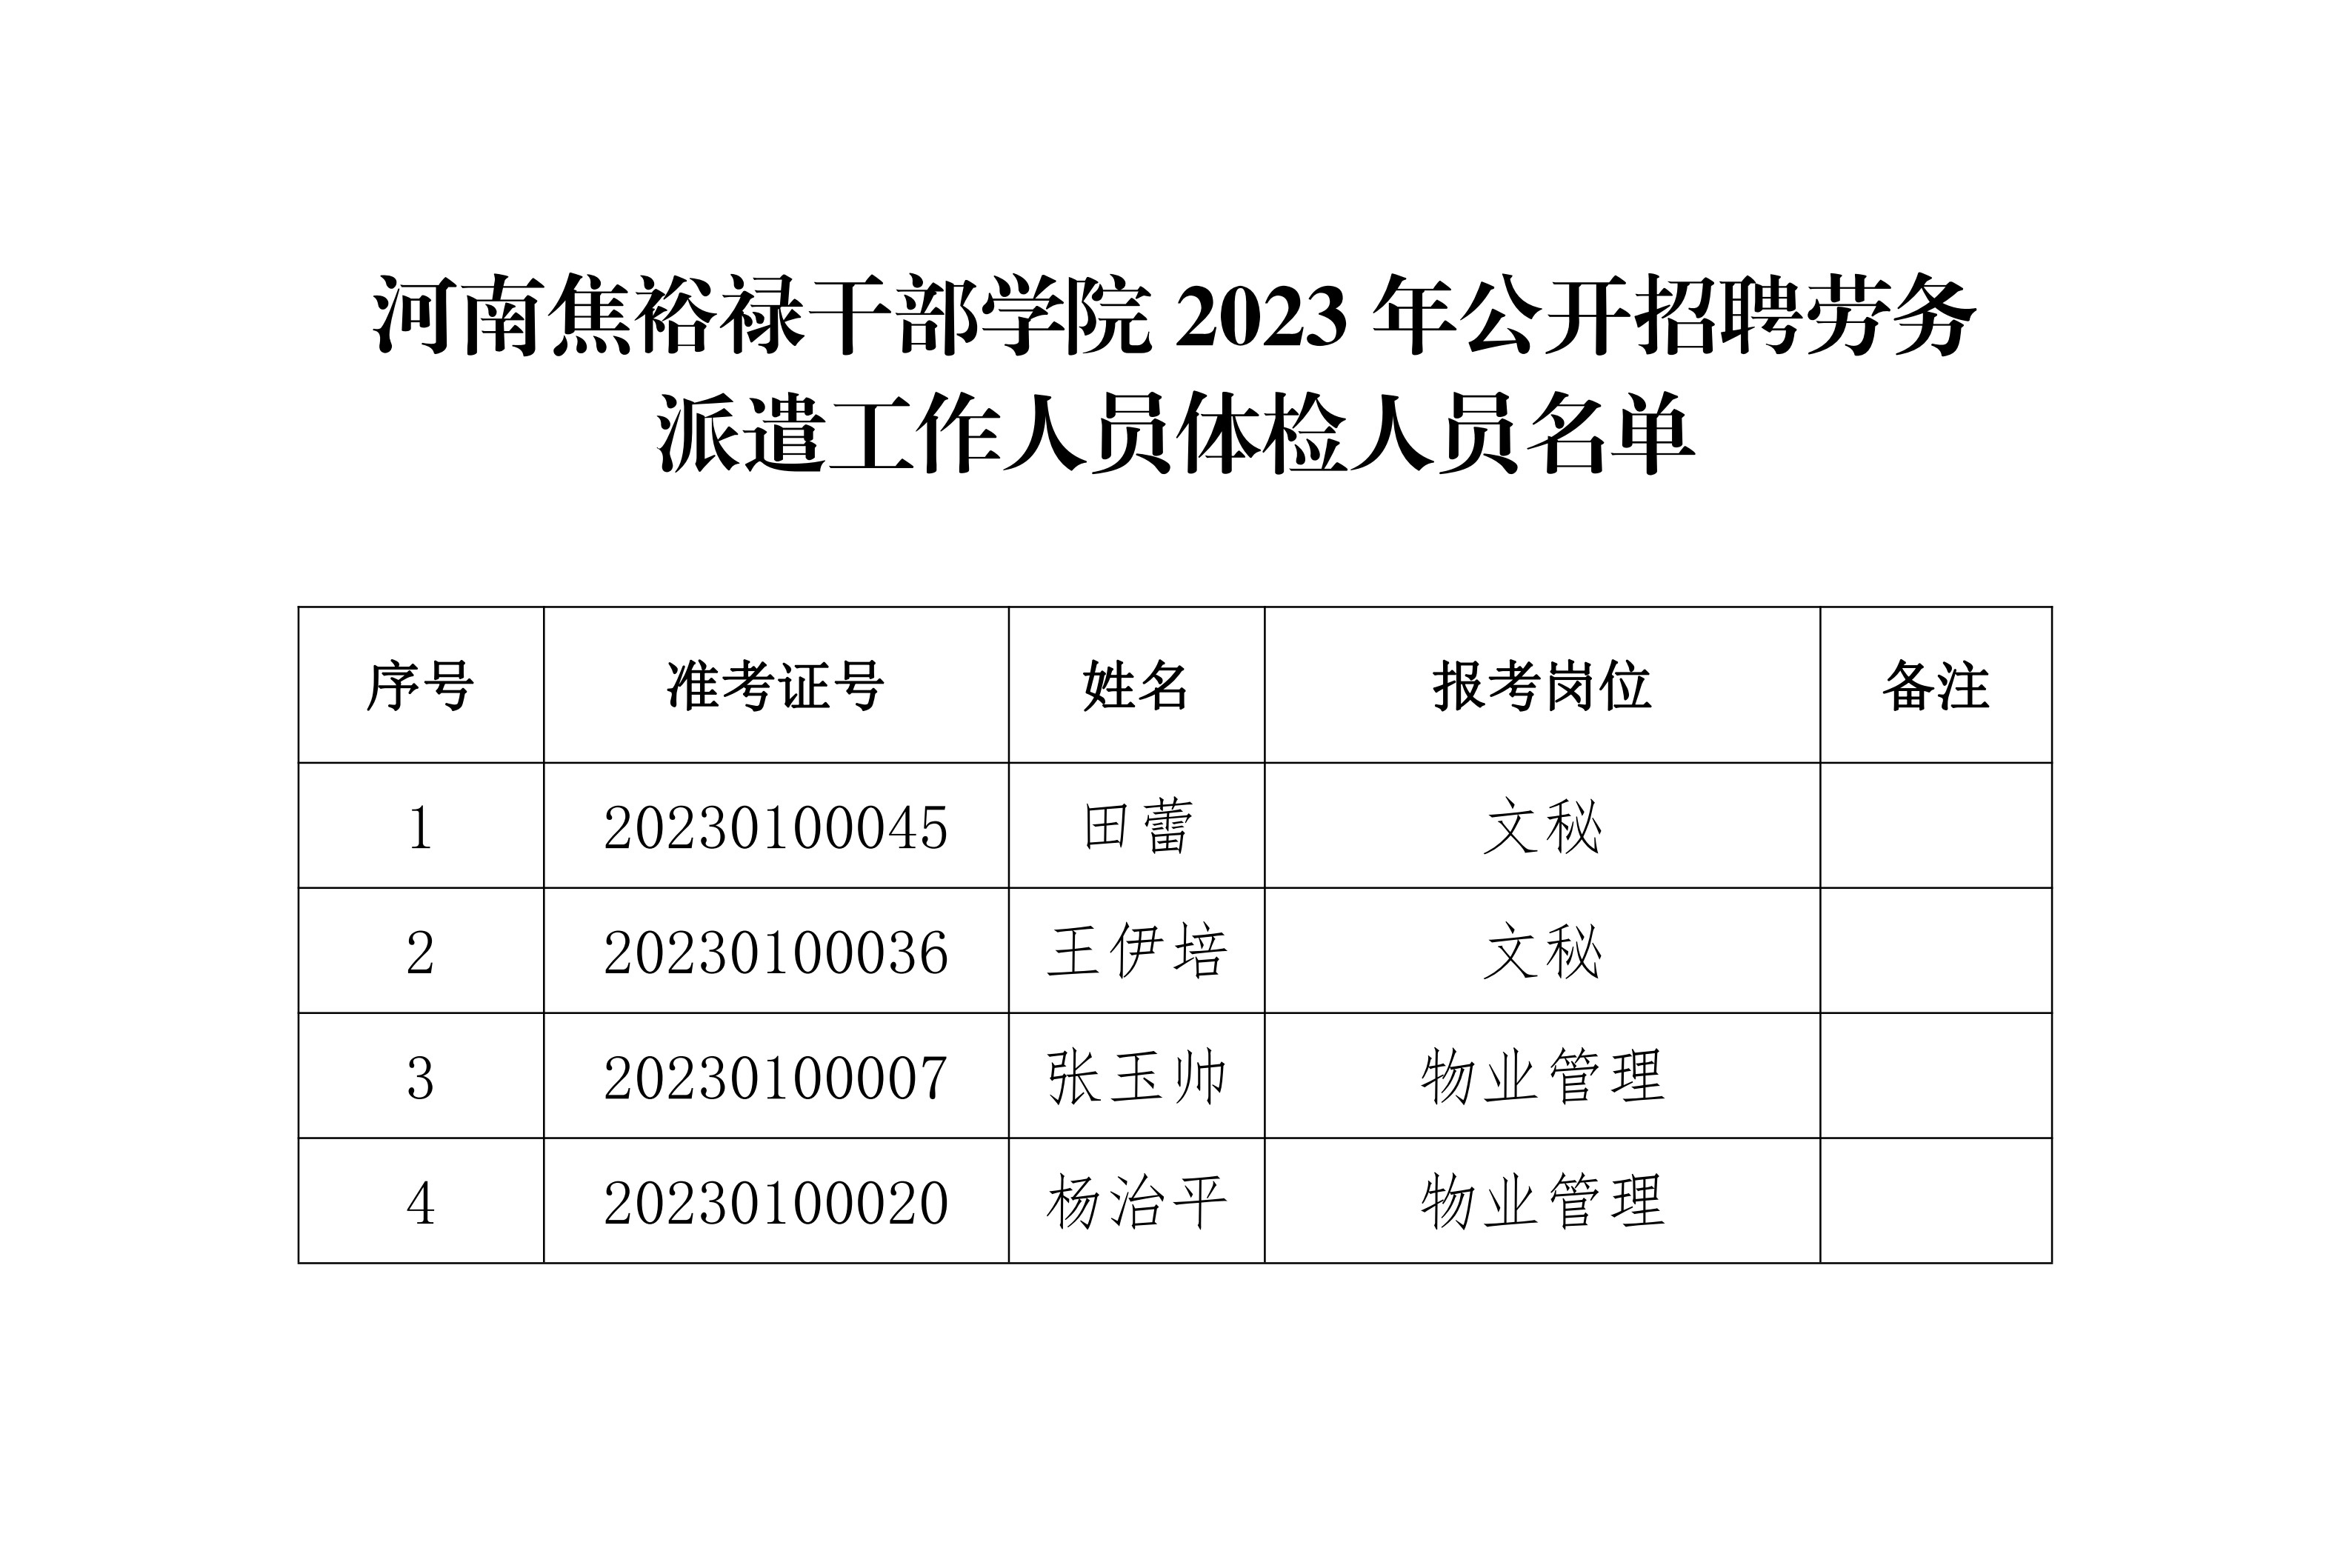 河南焦裕禄干部学院2023年公开招聘劳务派遣工作人员体检人员名单_1 拷贝.jpg